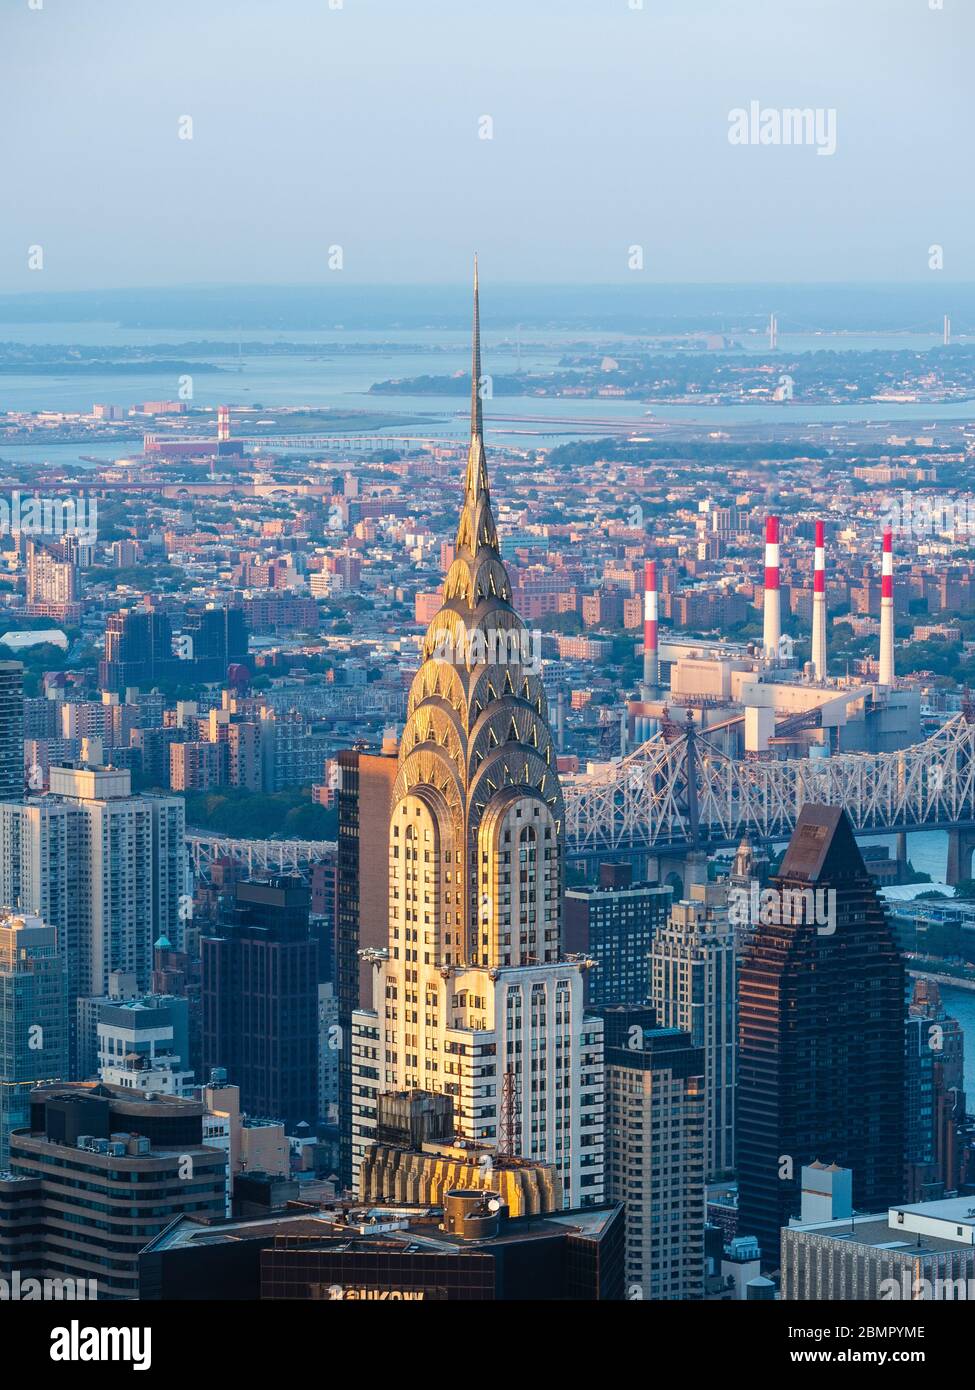 Edificio Chrysler, un rascacielos de estilo Art Deco, ubicado en Manhattan, Nueva York, Estados Unidos de América. Foto de stock